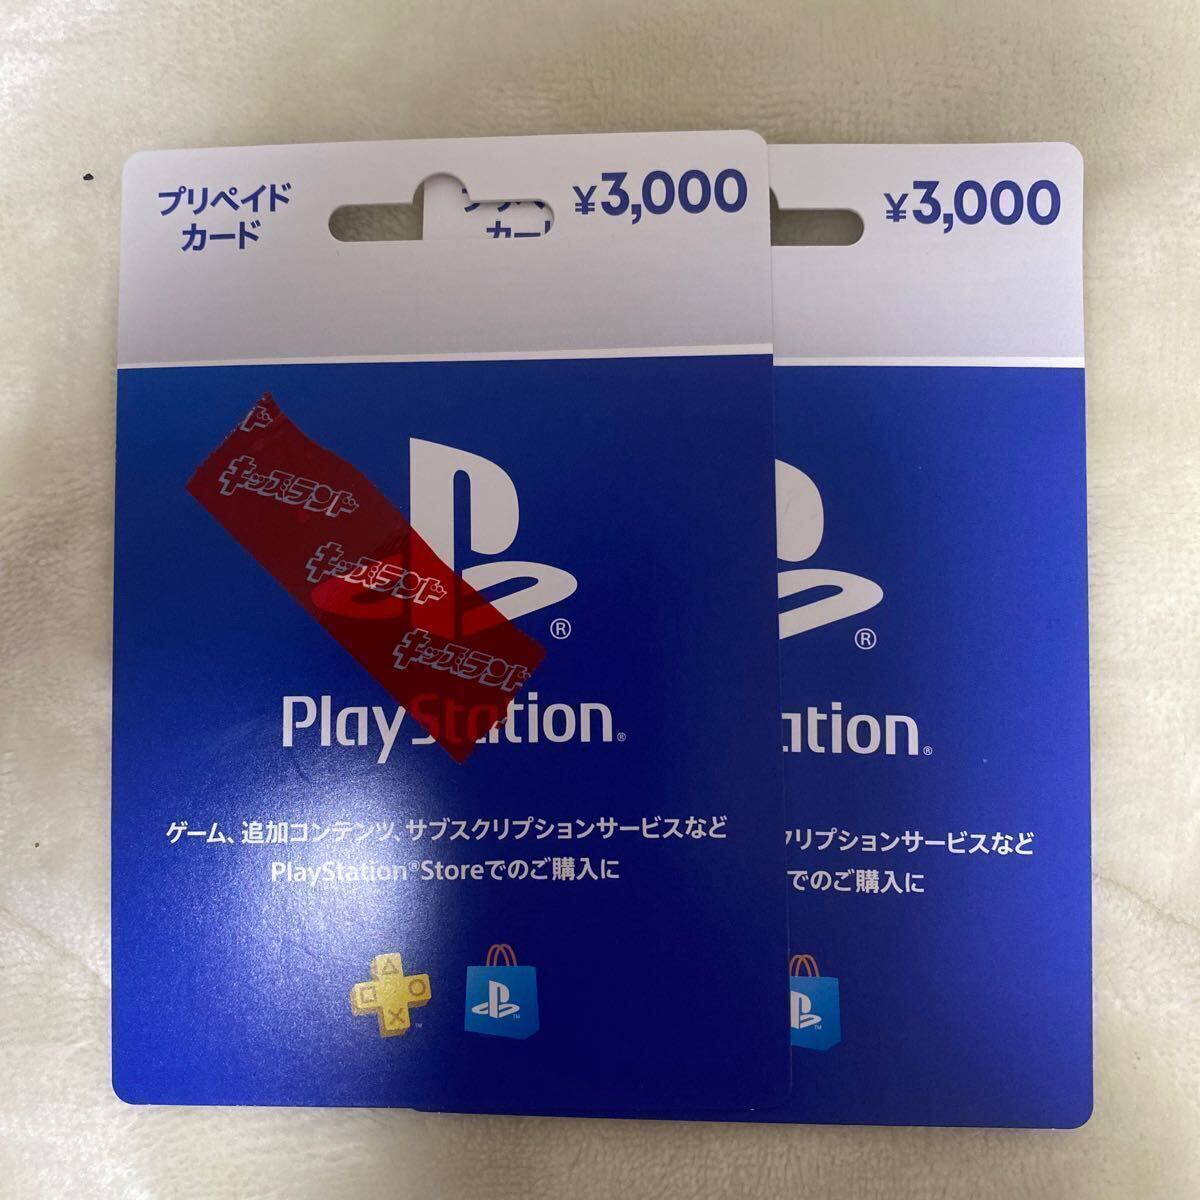 6000円分プレイステーションストアカード 3000円2枚 、新品未使用 、コード通知の画像1